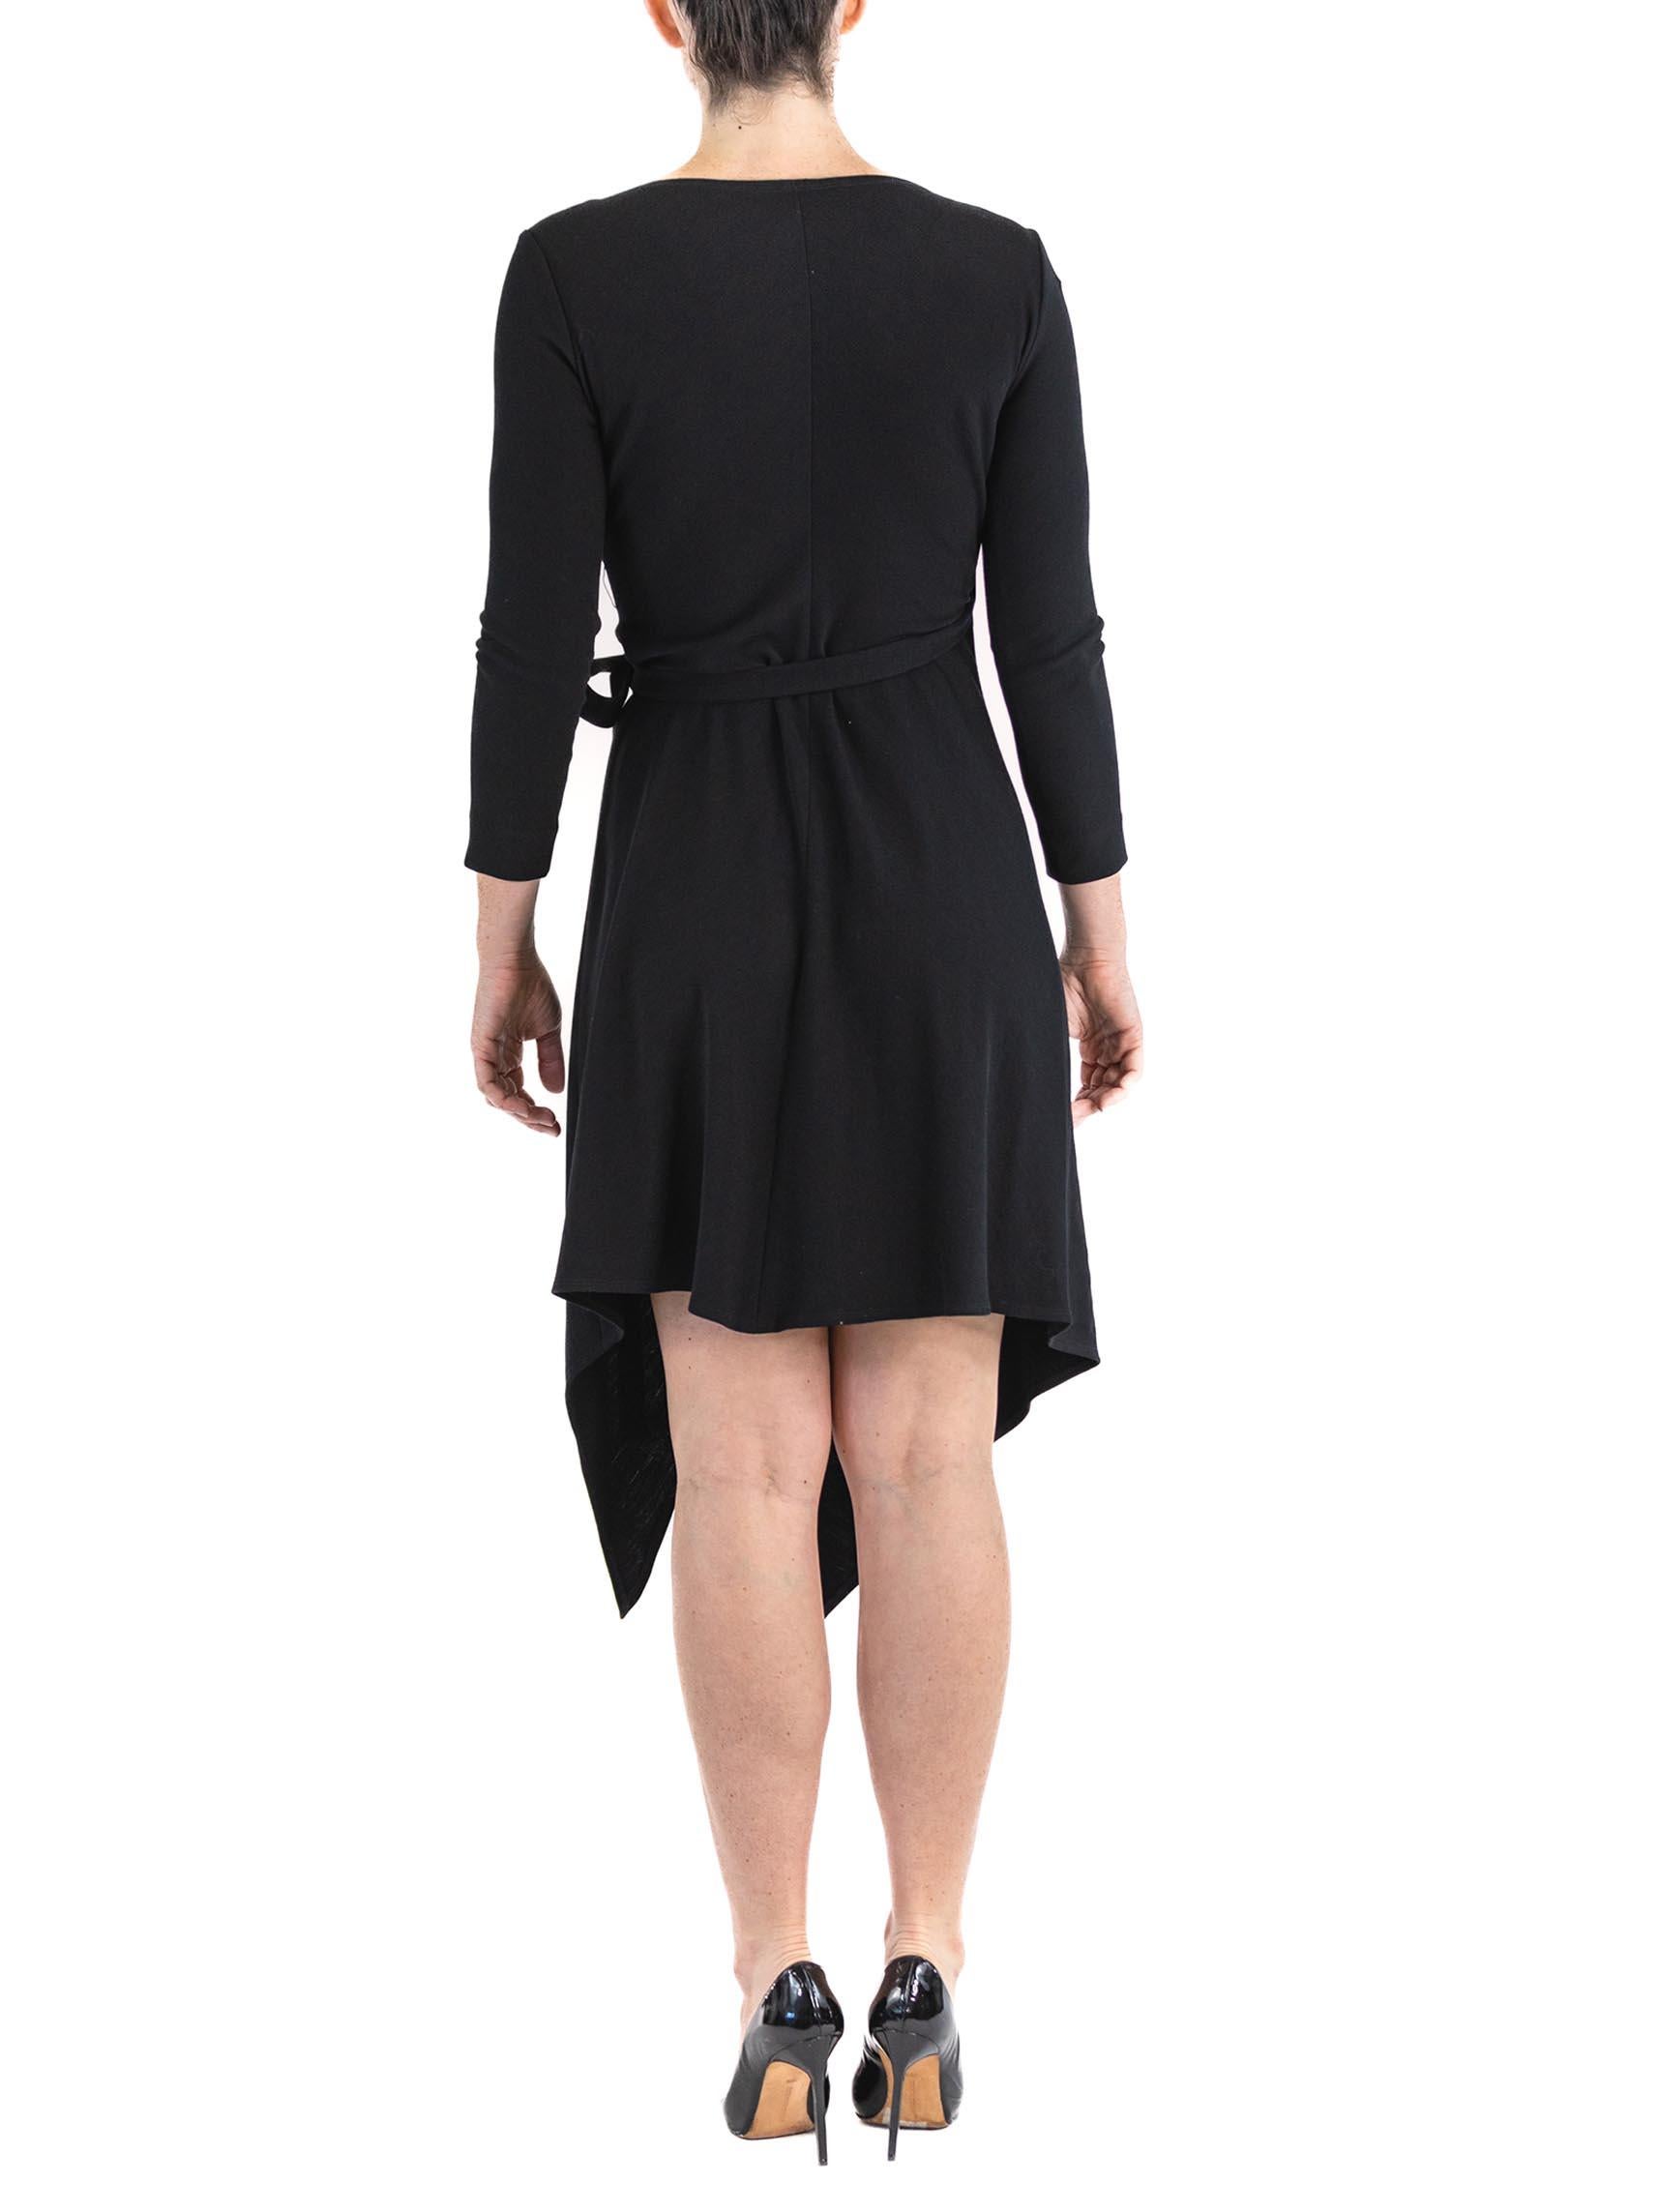 1980S DONNA KARAN Black Wool Knit Belted Wrap Dress For Sale 5